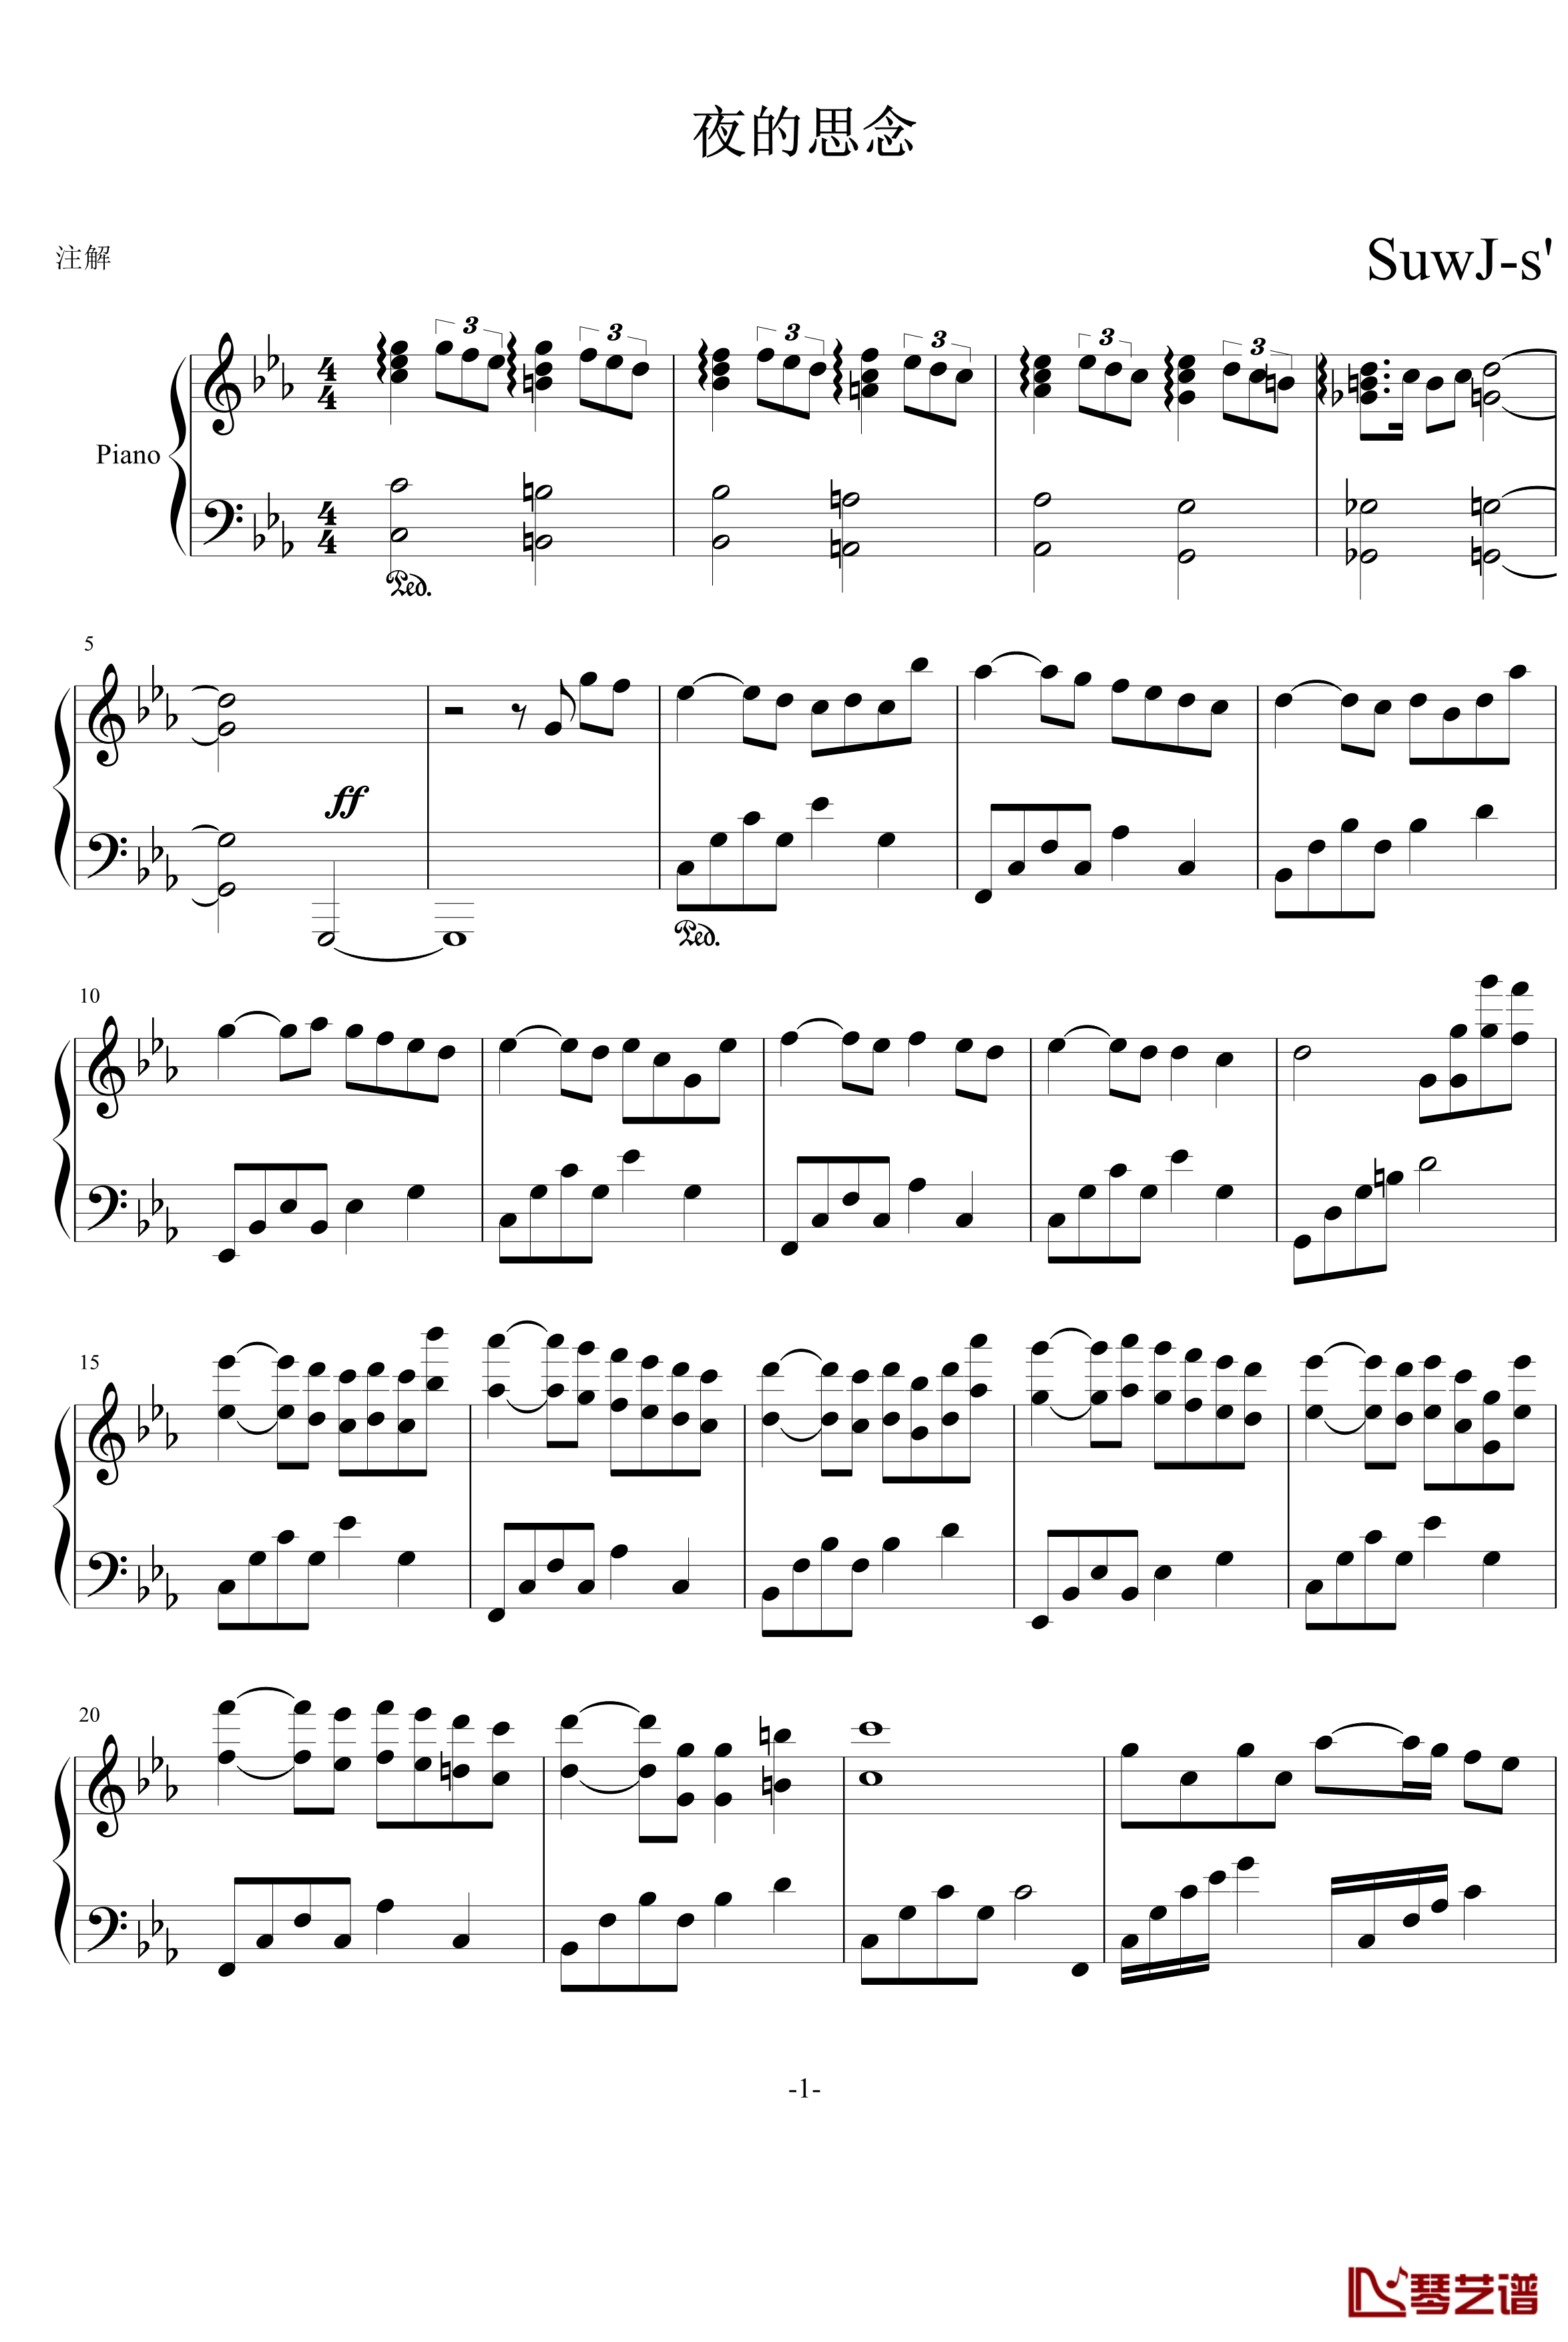 夜的思念钢琴谱-PianoYZ1